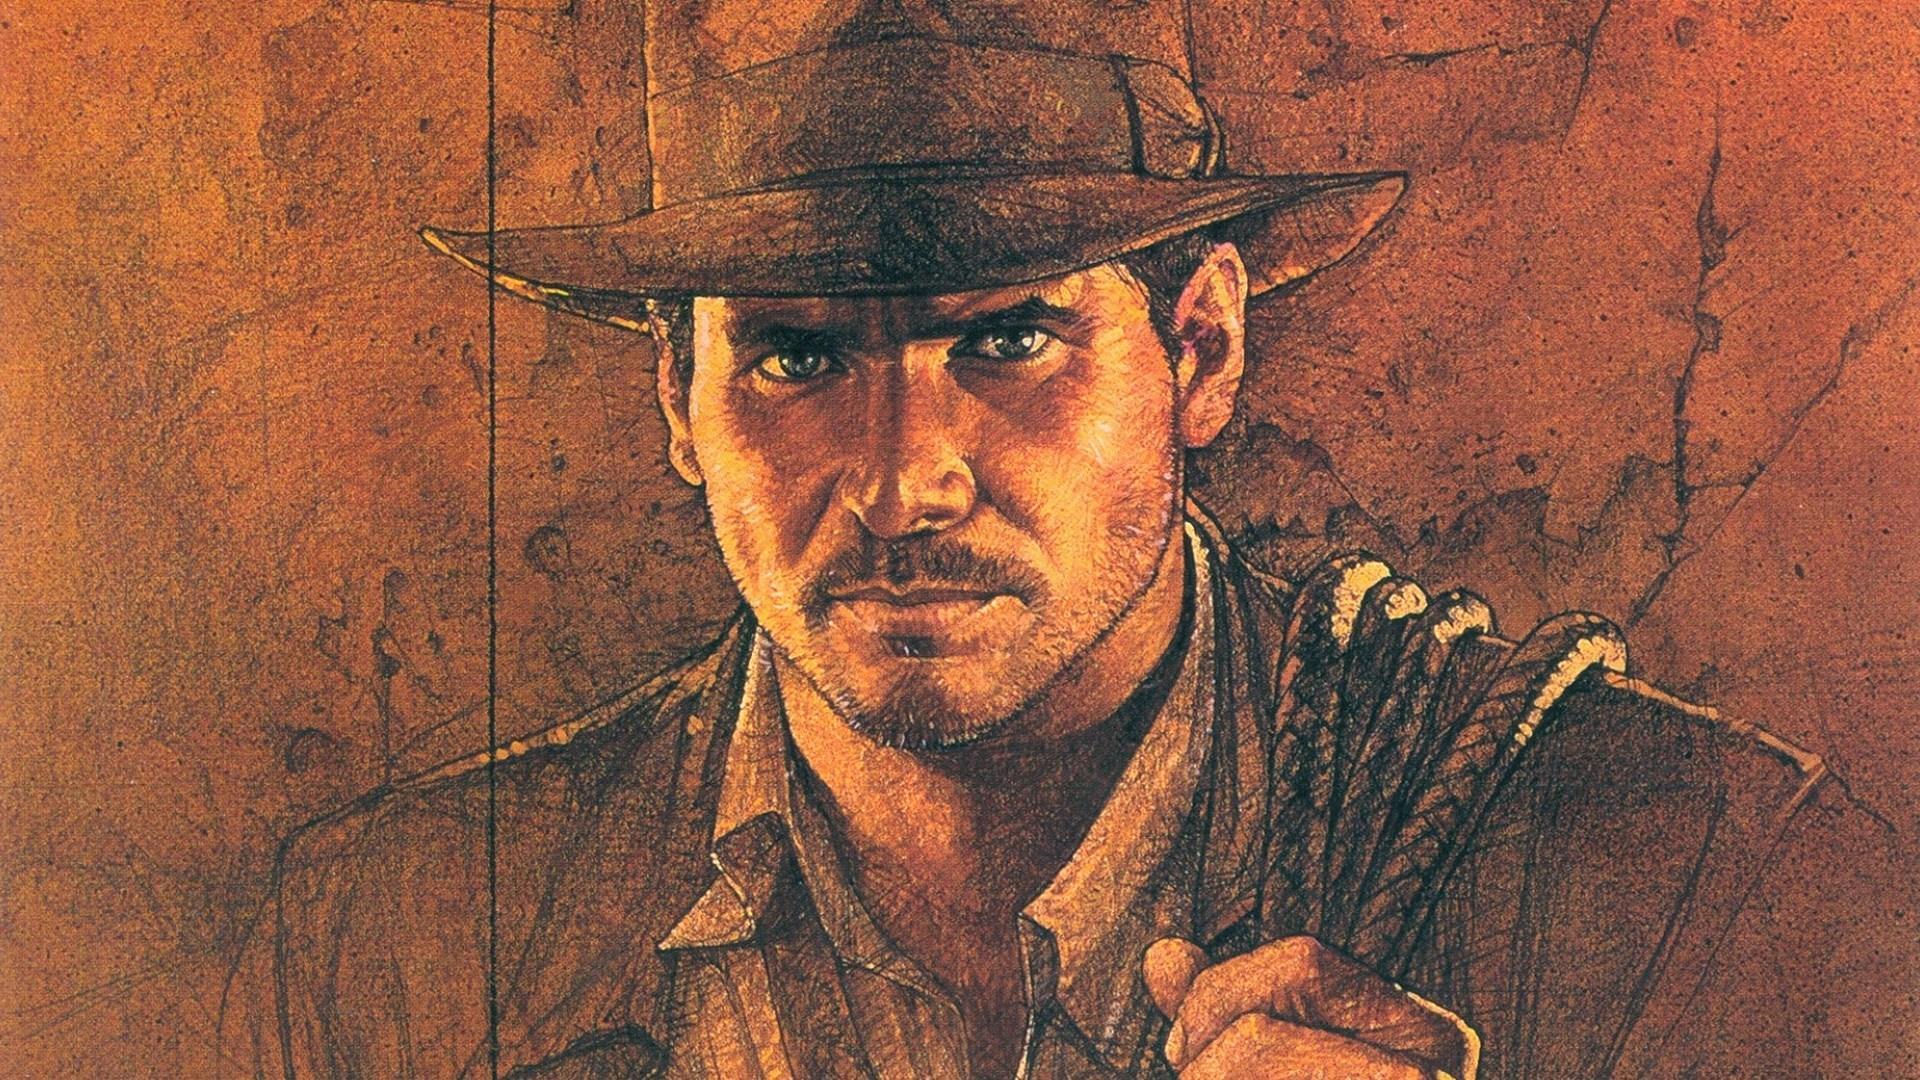 Indiana Jones Wallpaper HD